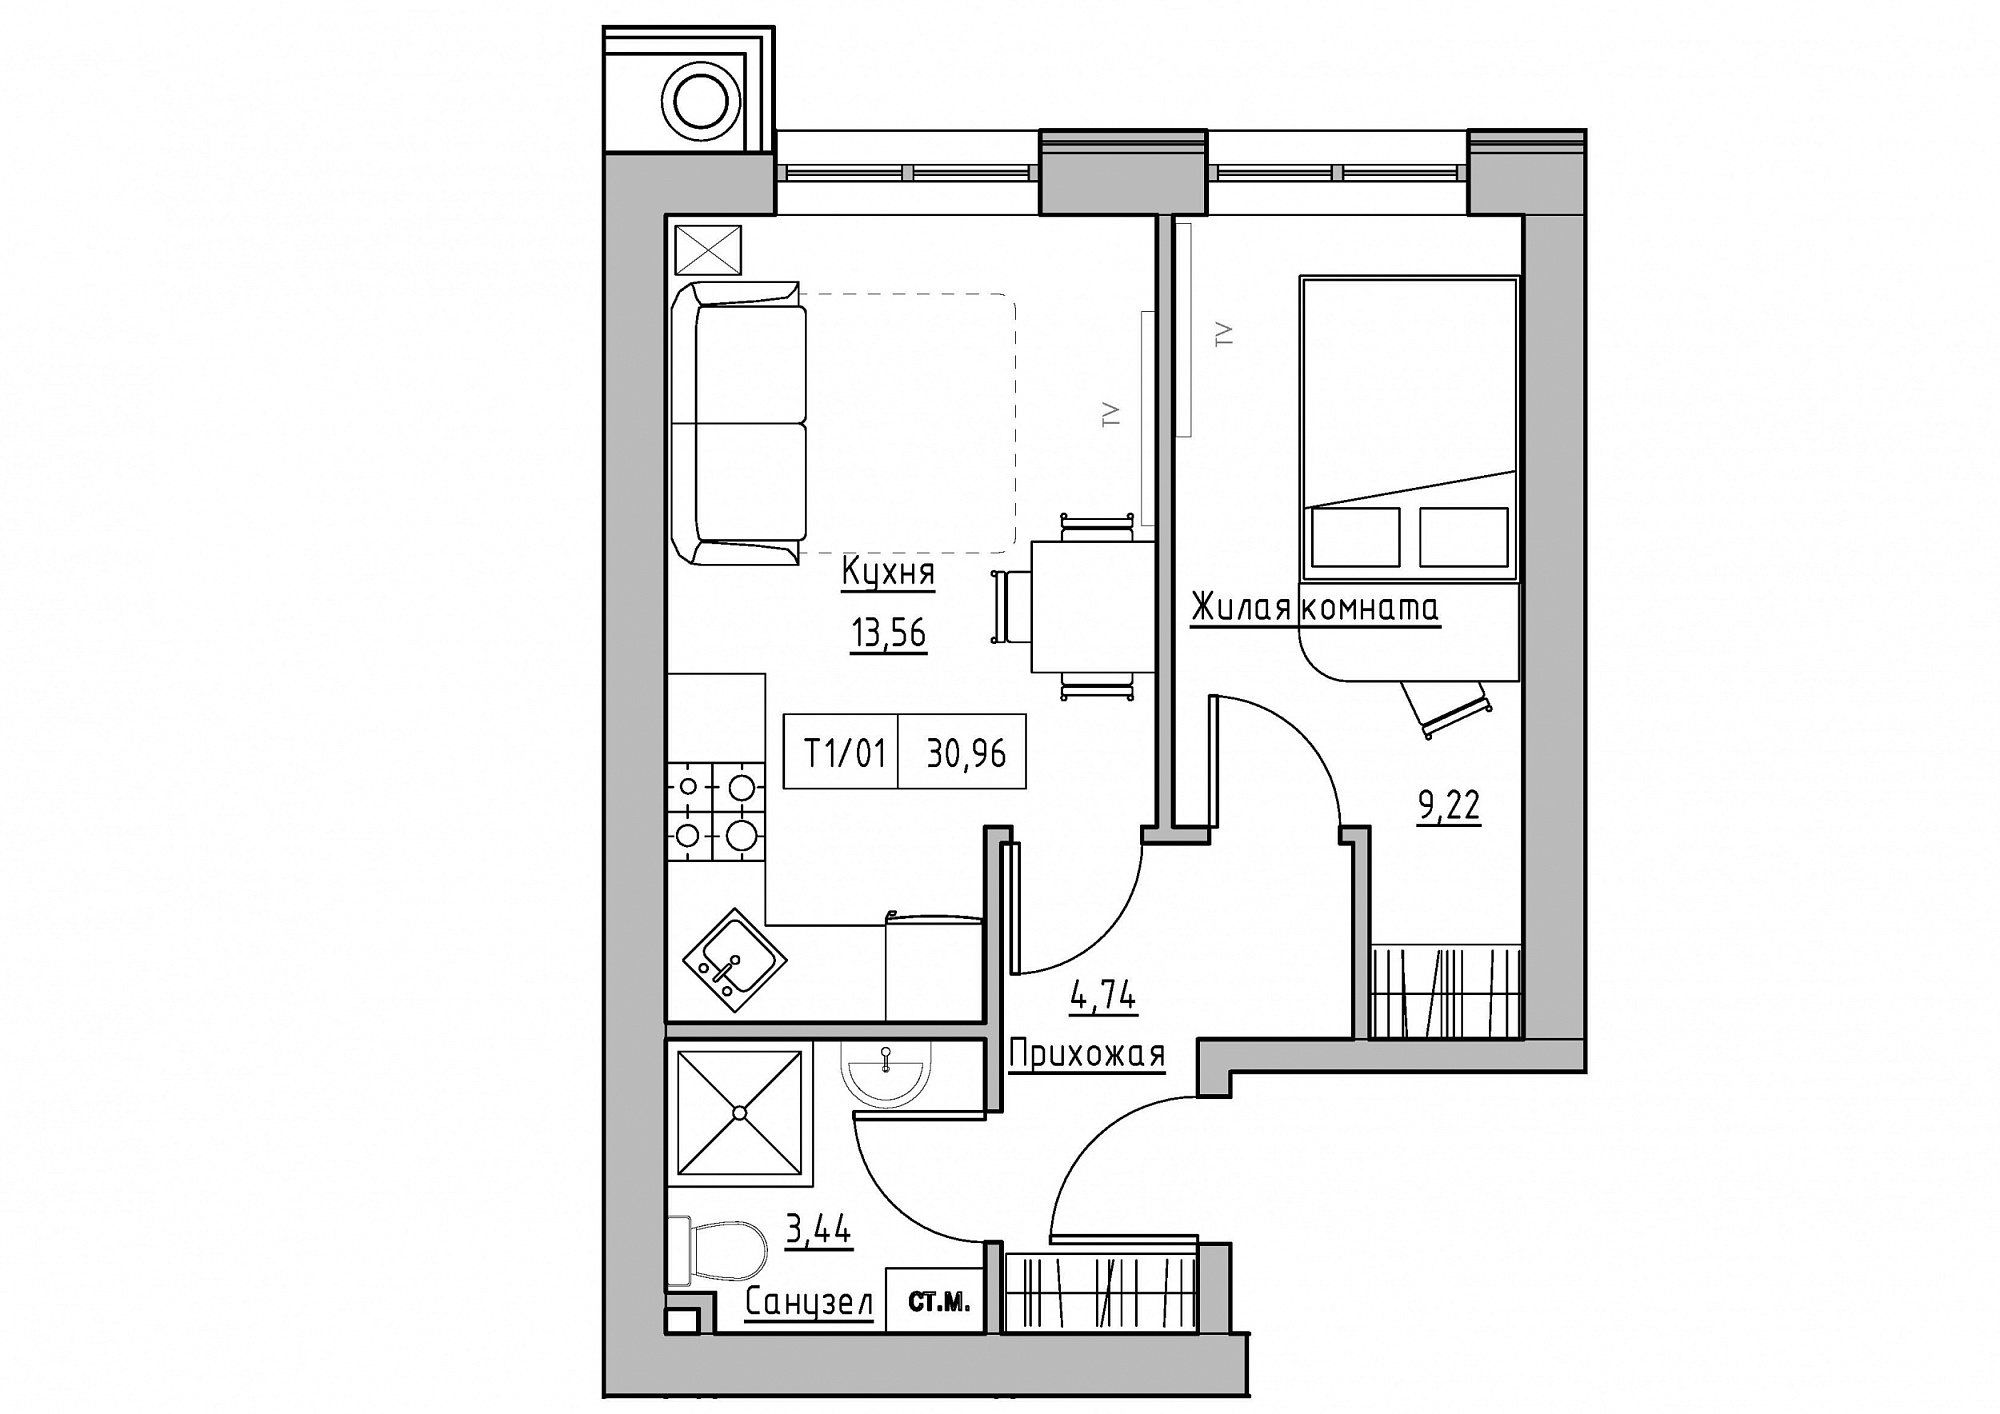 Планування 1-к квартира площею 30.96м2, KS-011-01/0013.